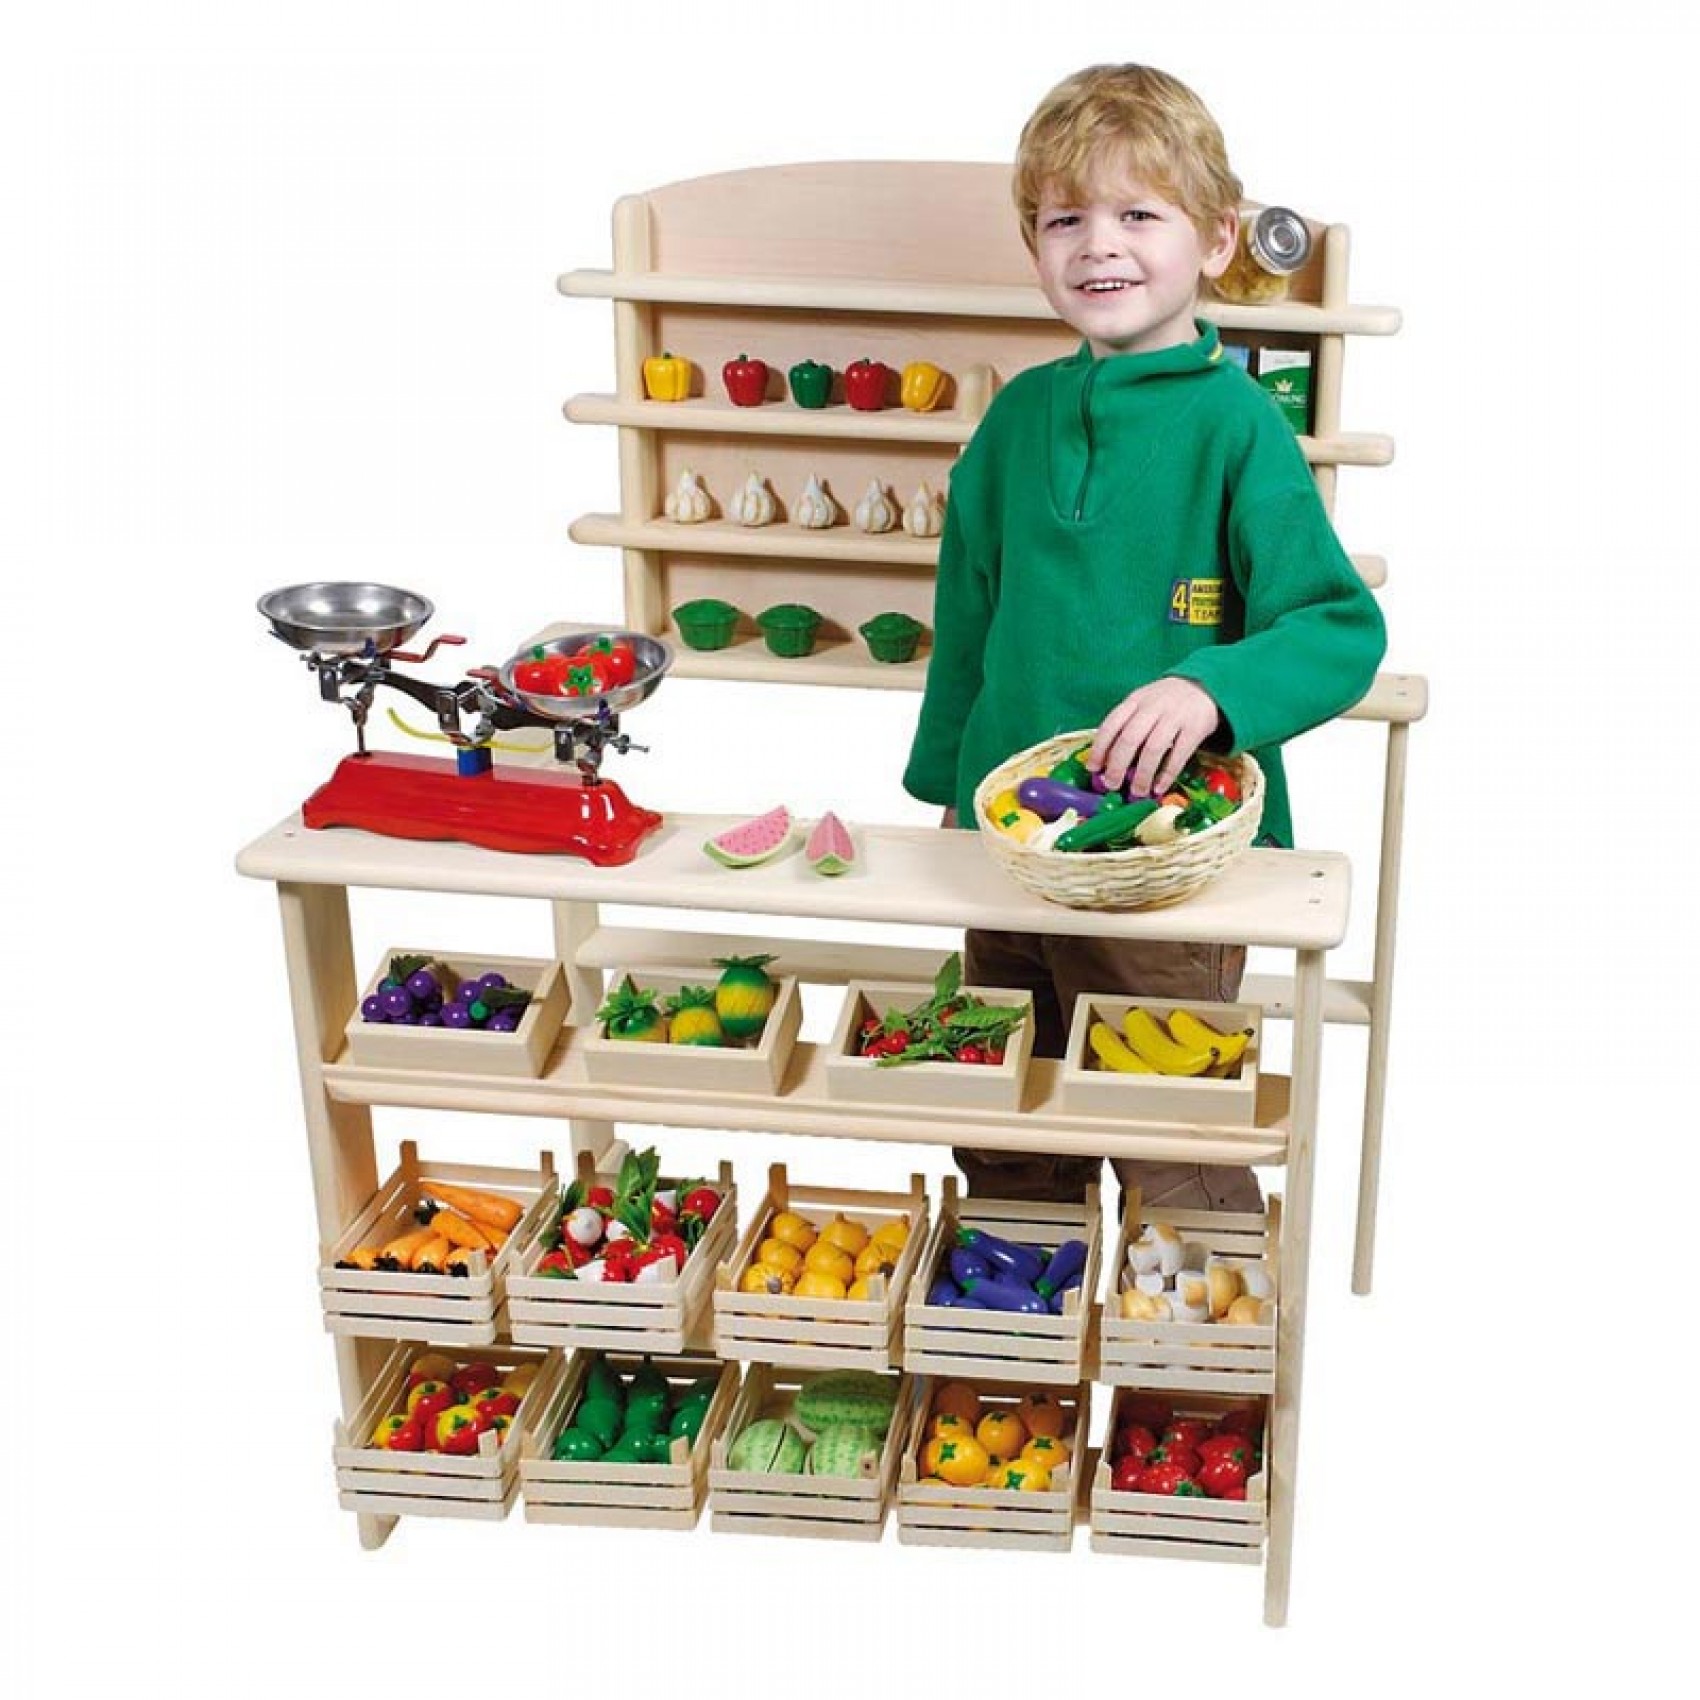 Idée de jouet en bois pour enfant : La jolie petite épicerie